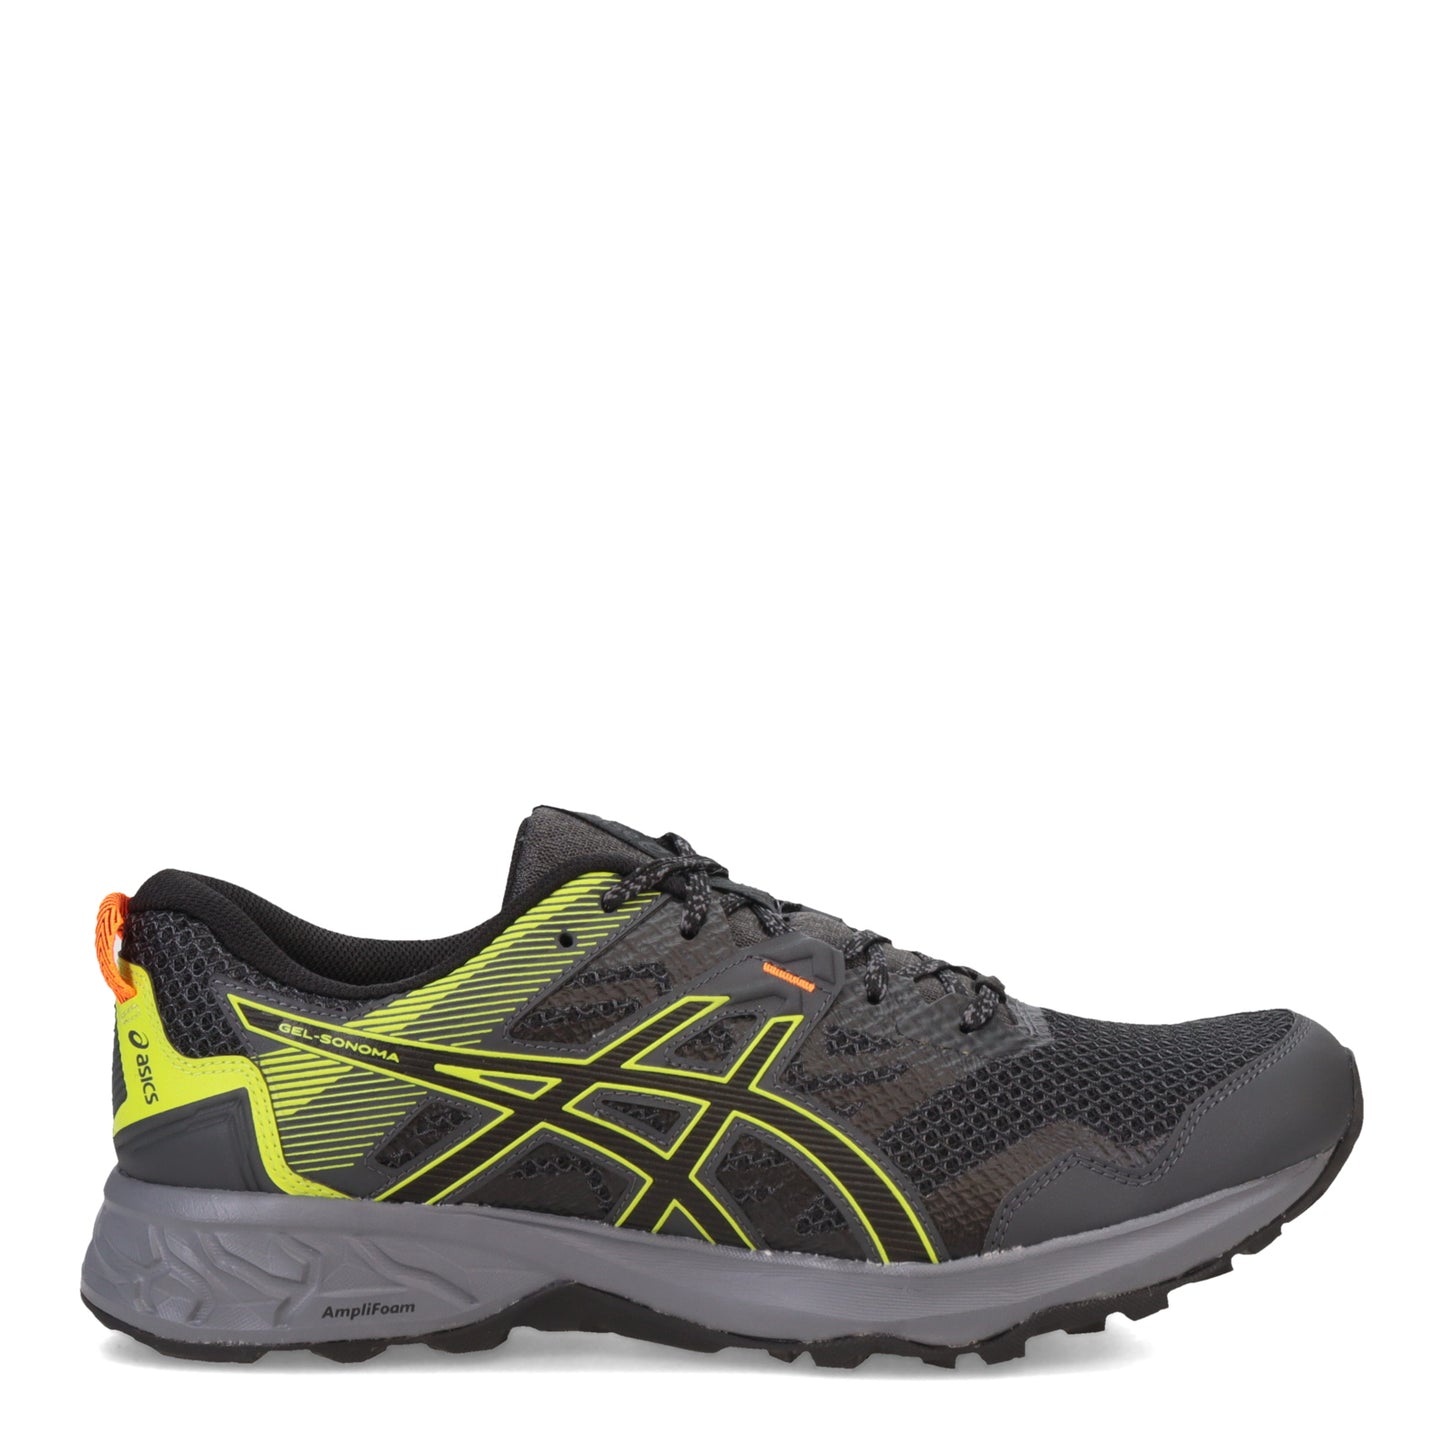 Peltz Shoes  Men's Asics GEL-Sonoma 5 Trail Running Shoe MULTICOLOR PASTEL 1011A661-021